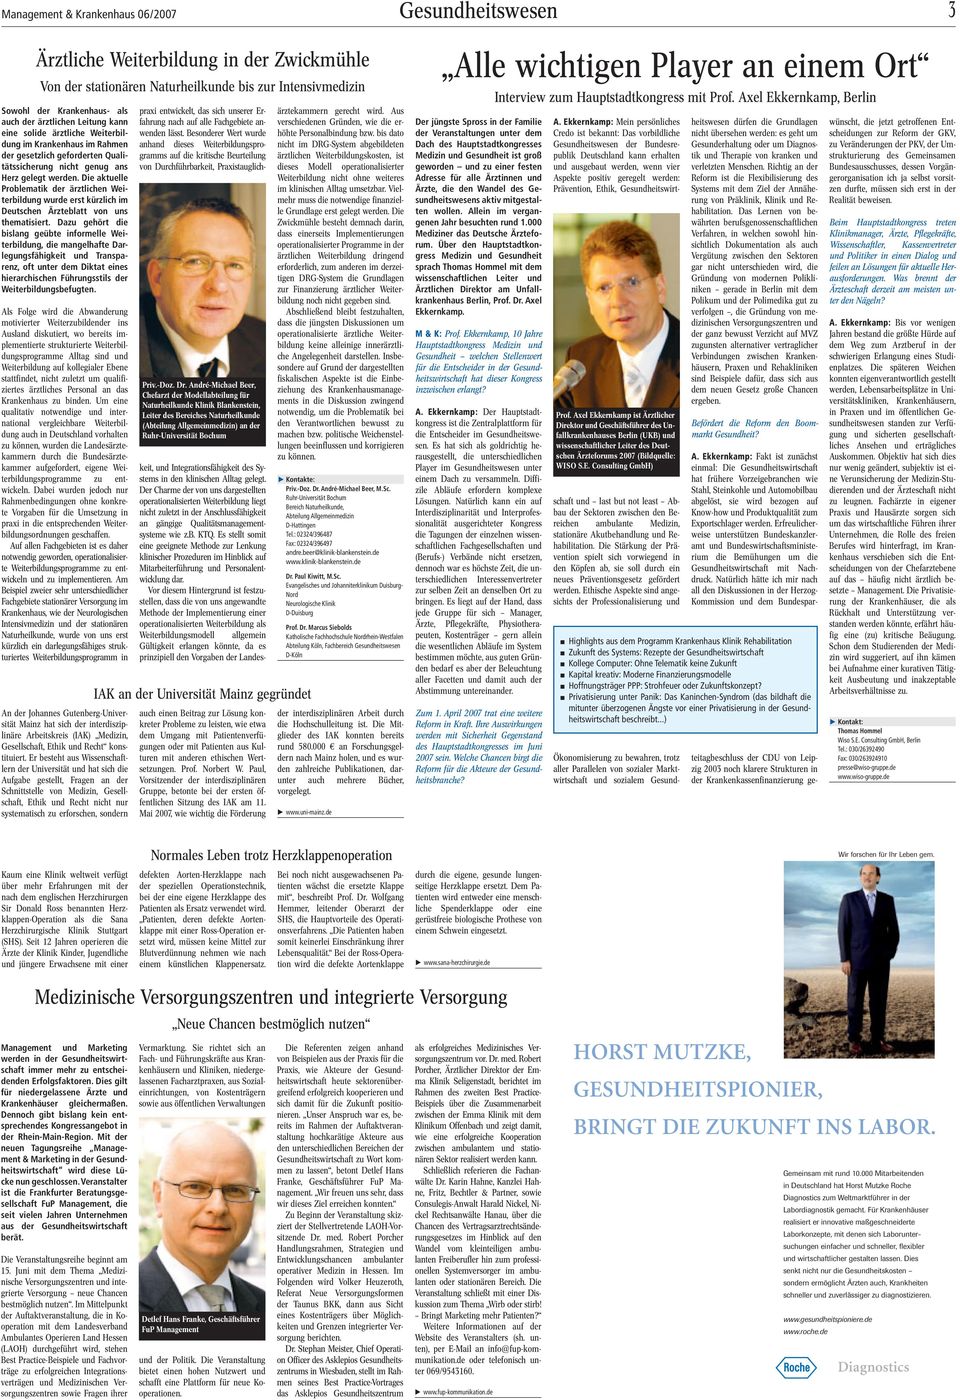 Die aktuelle Problematik der ärztlichen Weiterbildung wurde erst kürzlich im Deutschen Ärzteblatt von uns thematisiert.